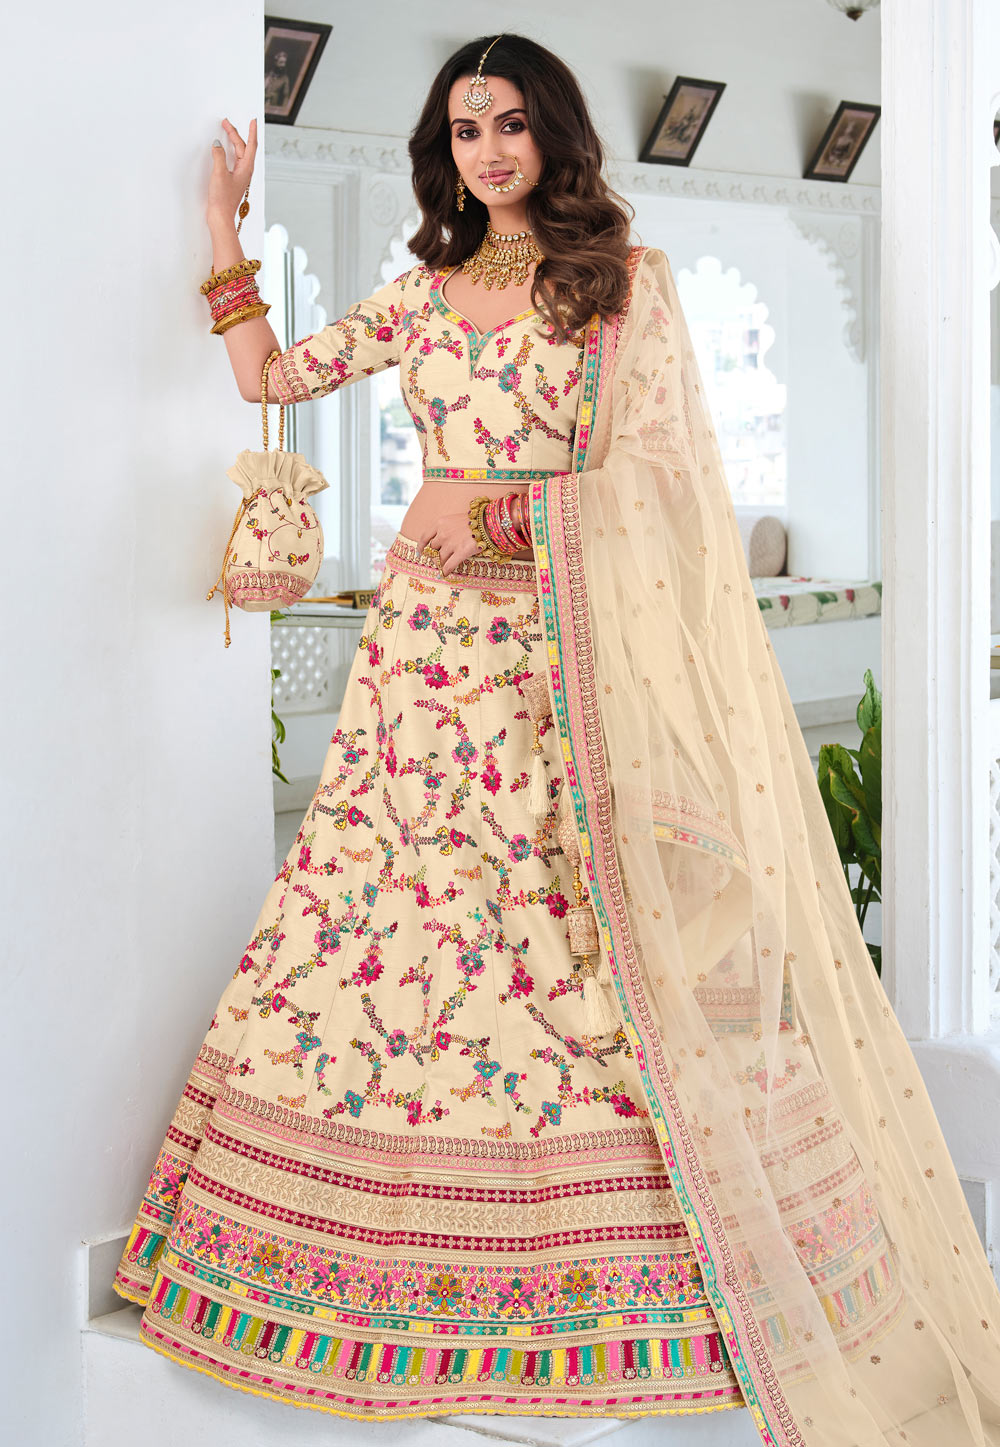 Buy Pink Wedding Lehenga Choli Online At Zeel Clothing-bdsngoinhaviet.com.vn